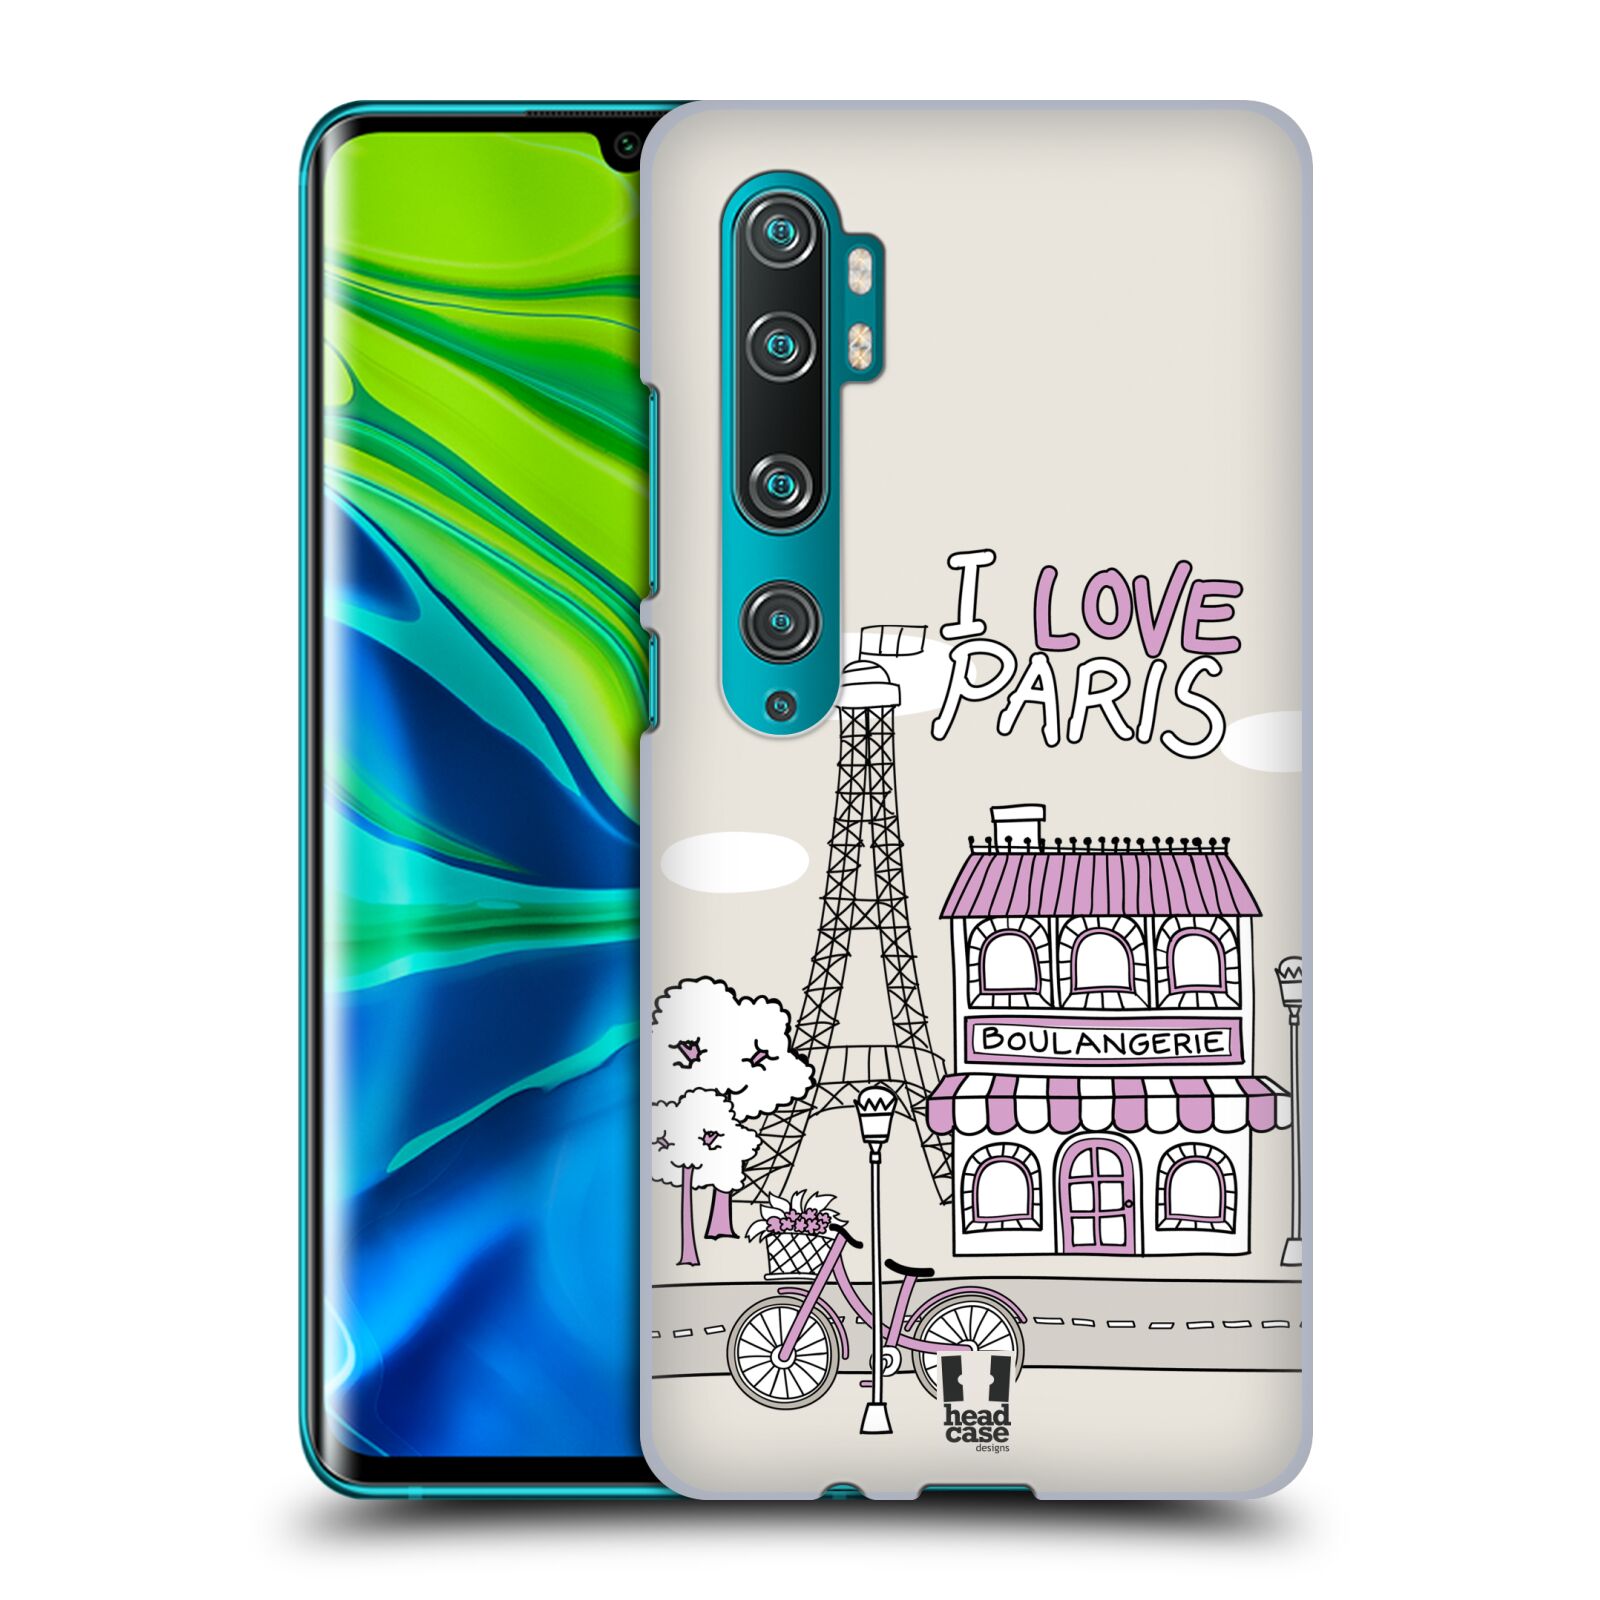 Pouzdro na mobil Xiaomi Mi Note 10 / Mi Note 10 PRO - HEAD CASE - vzor Kreslená městečka FIALOVÁ, Paříž, Francie, I LOVE PARIS